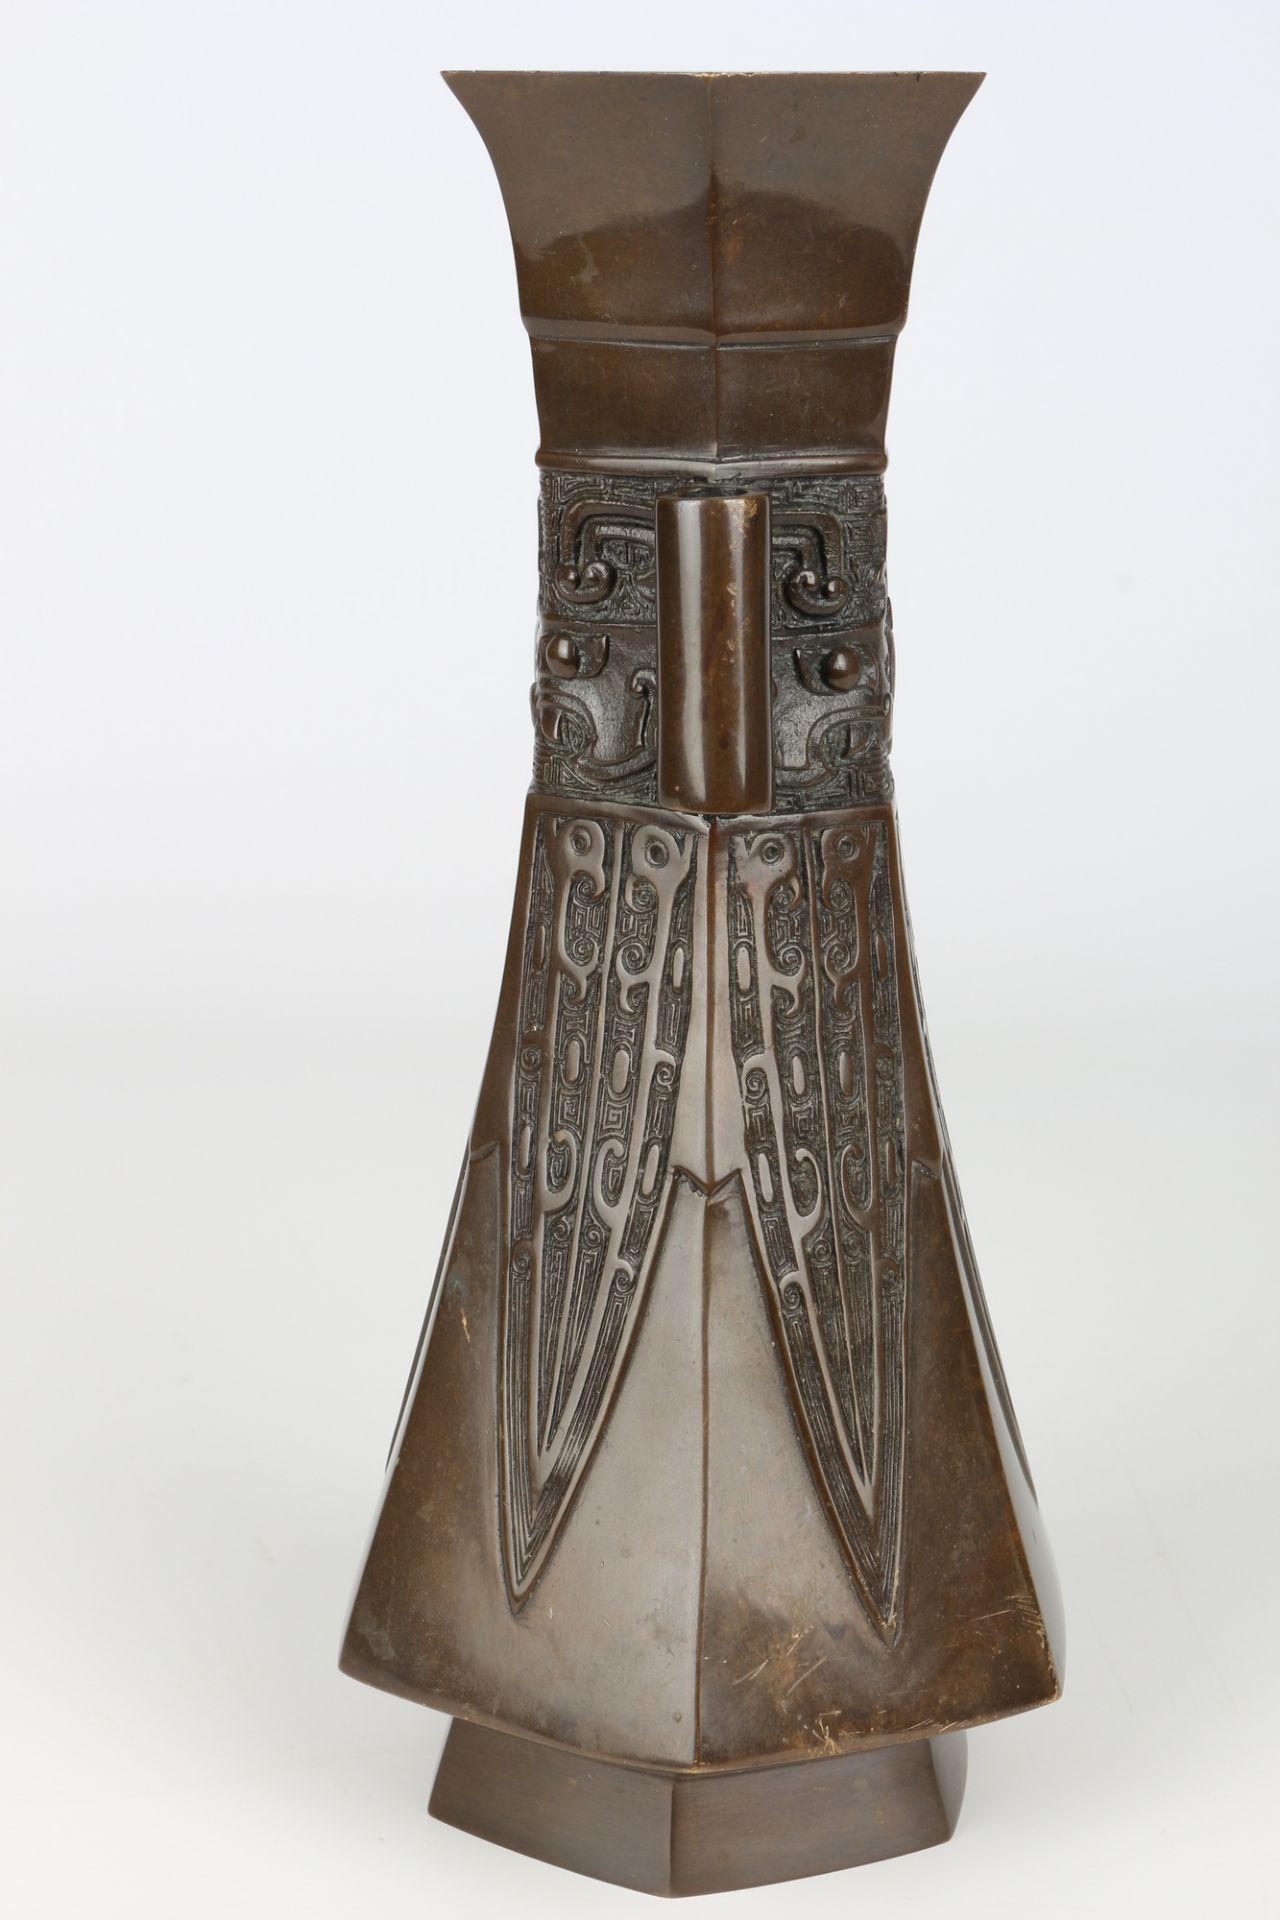 Japan hexagonale Bronze Vase Meiji-Period (1868 - 1912), japanese bronze vase, - Image 4 of 6